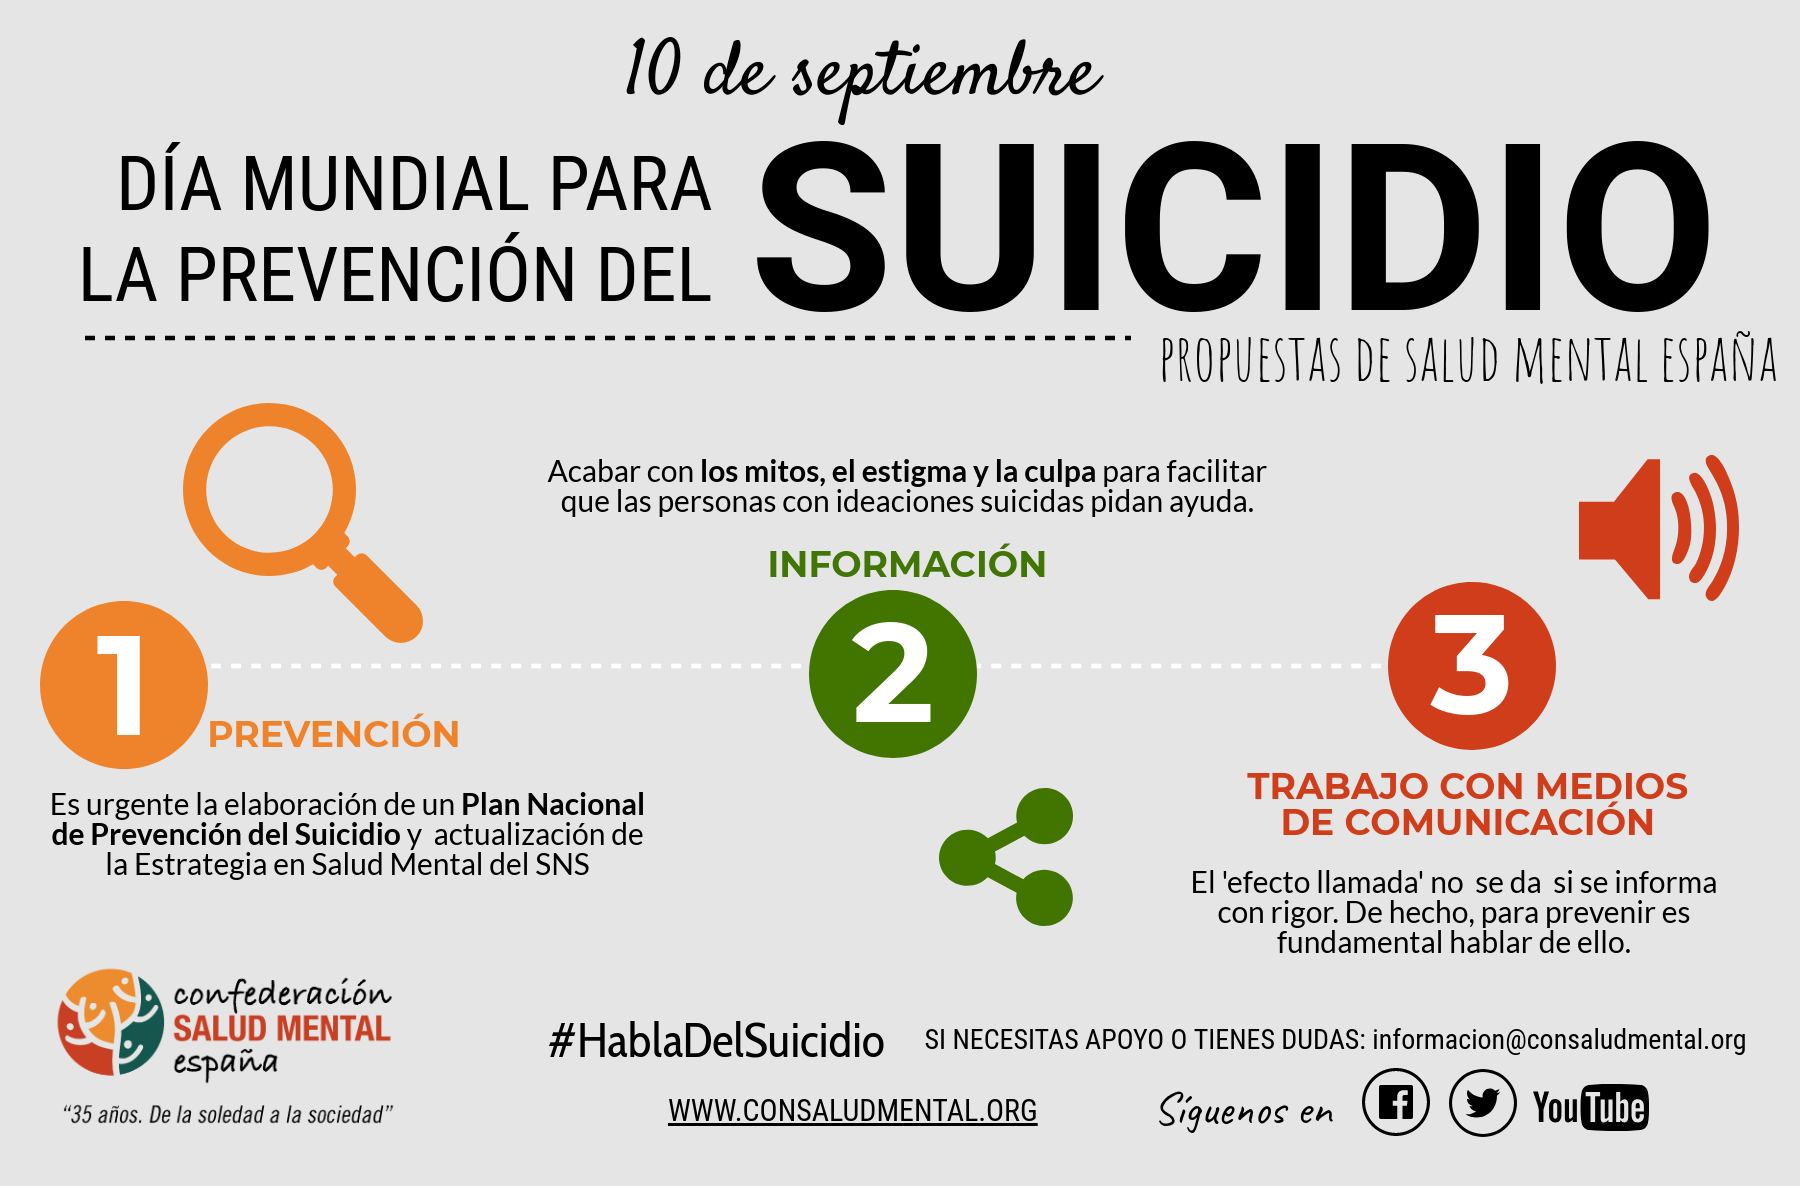 Hoy 10 de septiembre se celebra el Día Mundial para la Prevención del Suicidio